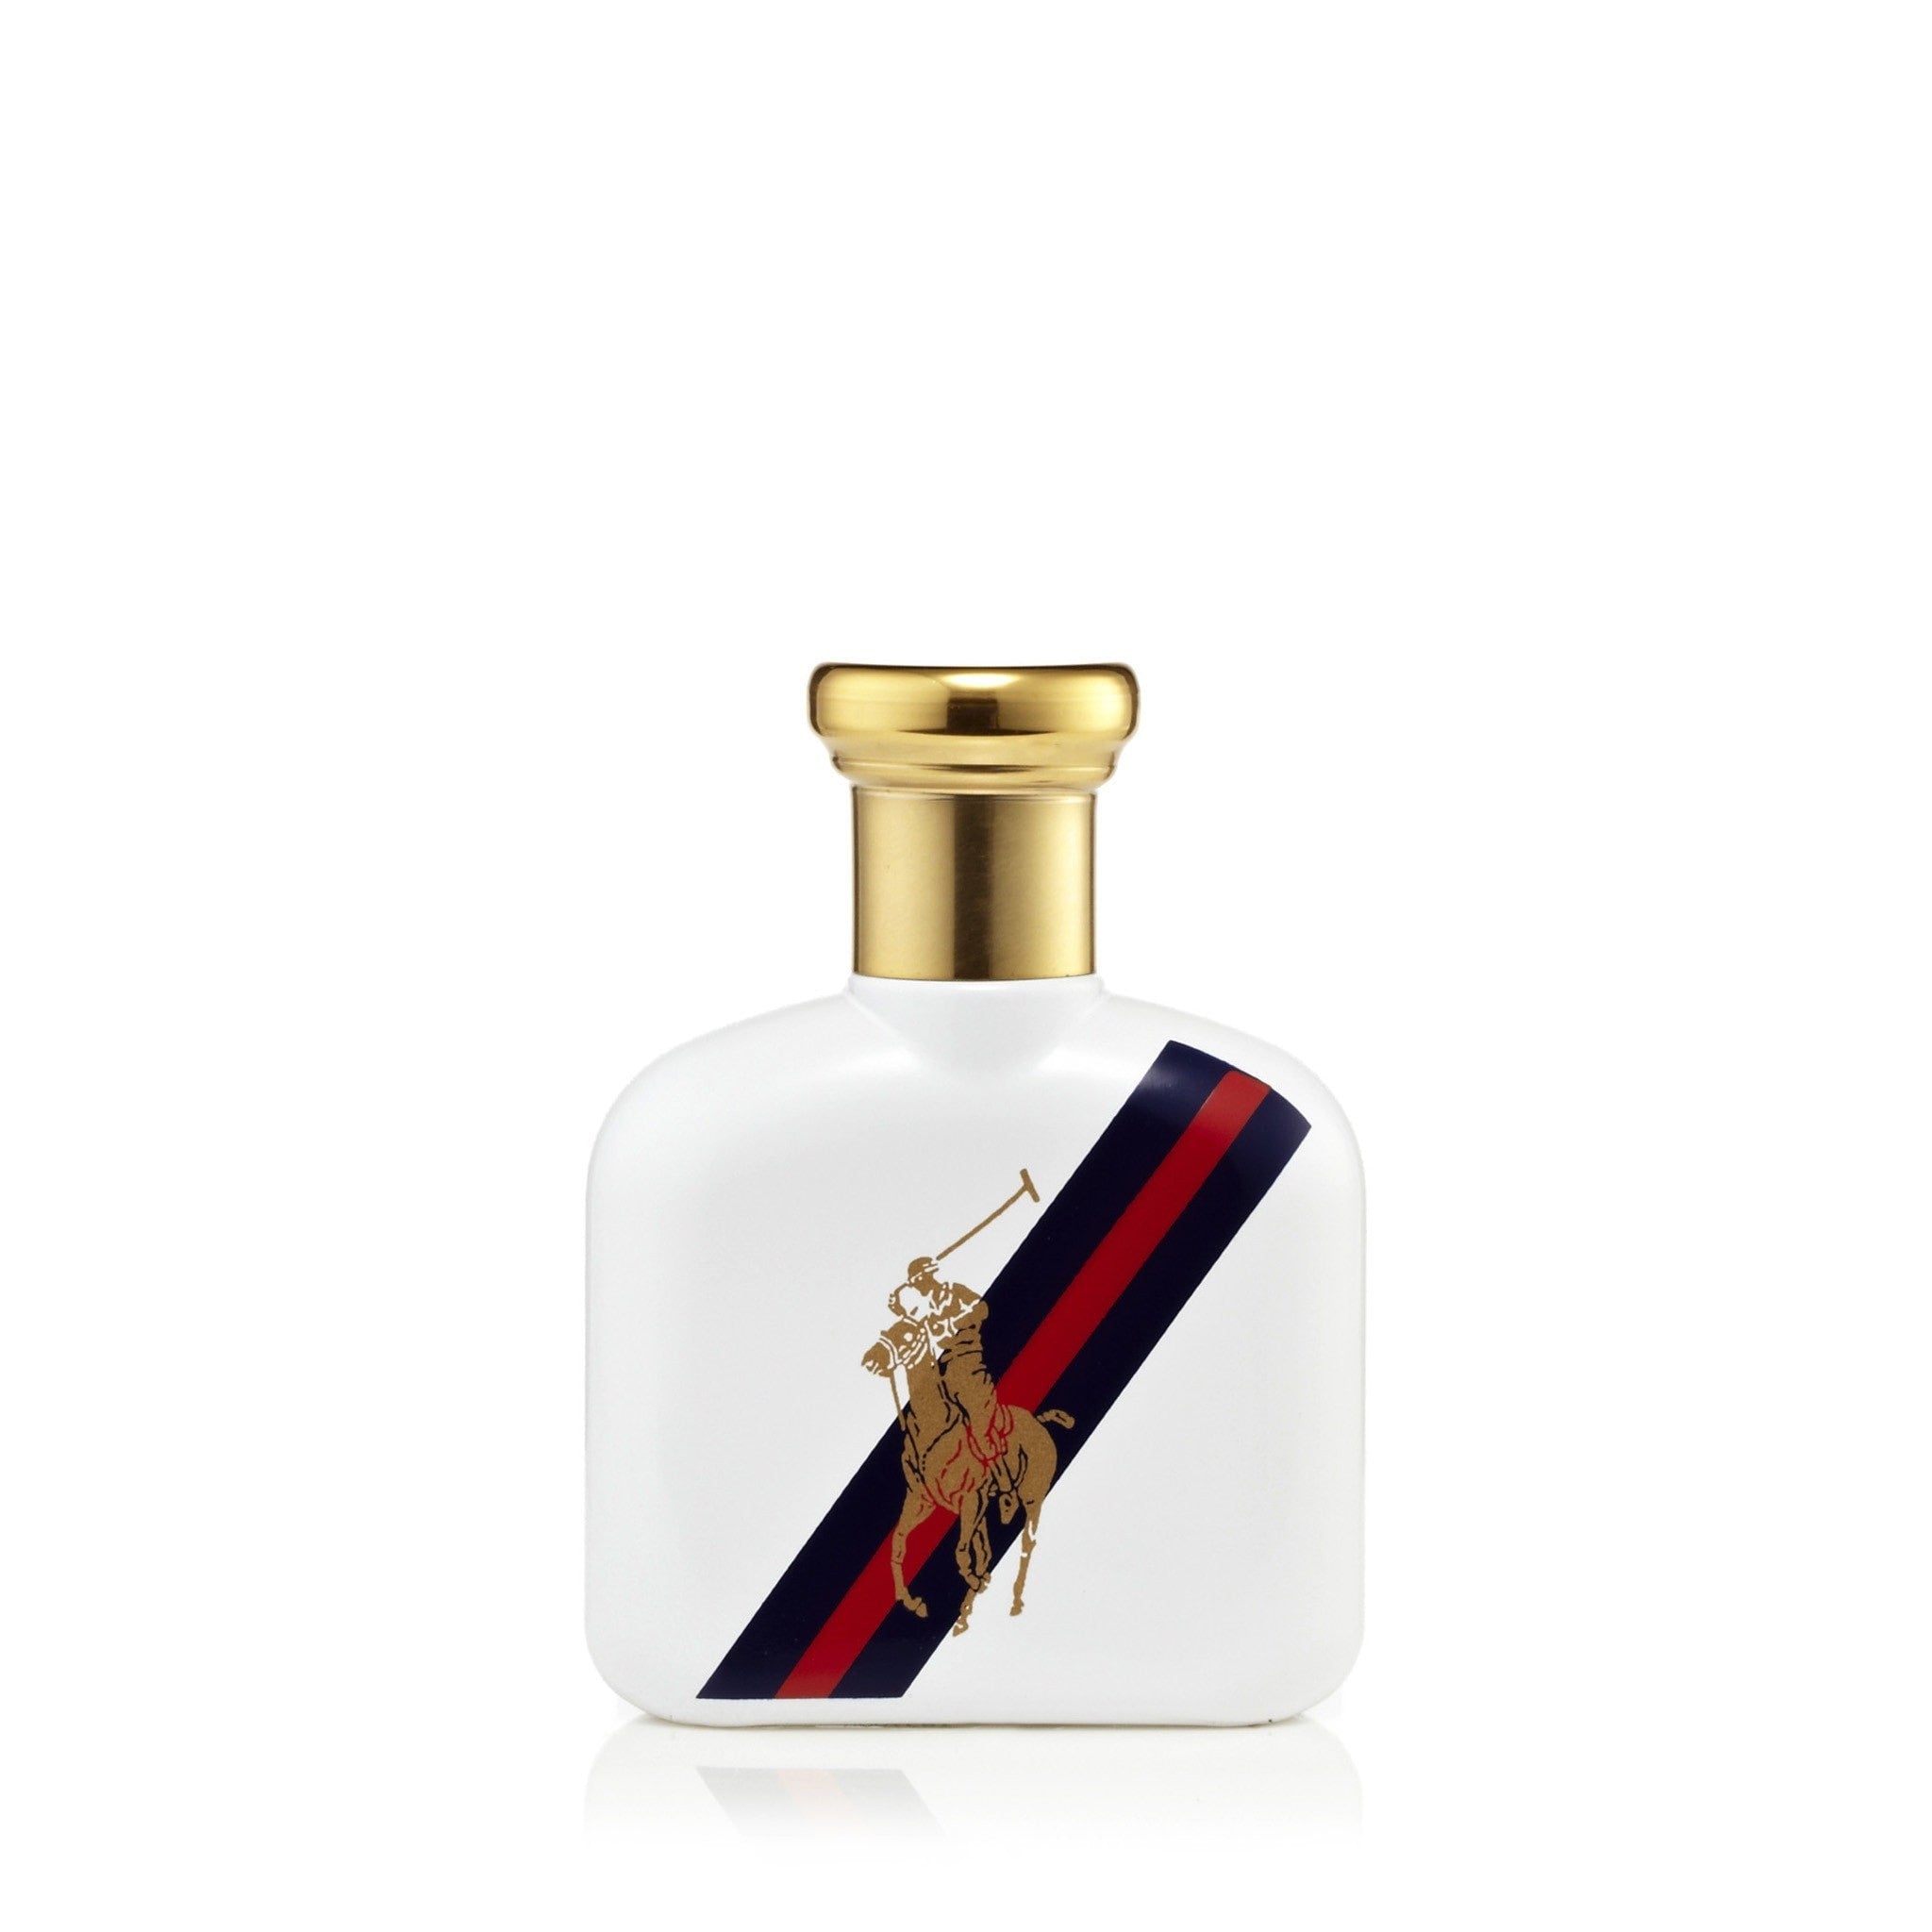 Polo Blue Eau de Parfum Spray for Men by Ralph Lauren – Fragrance Outlet